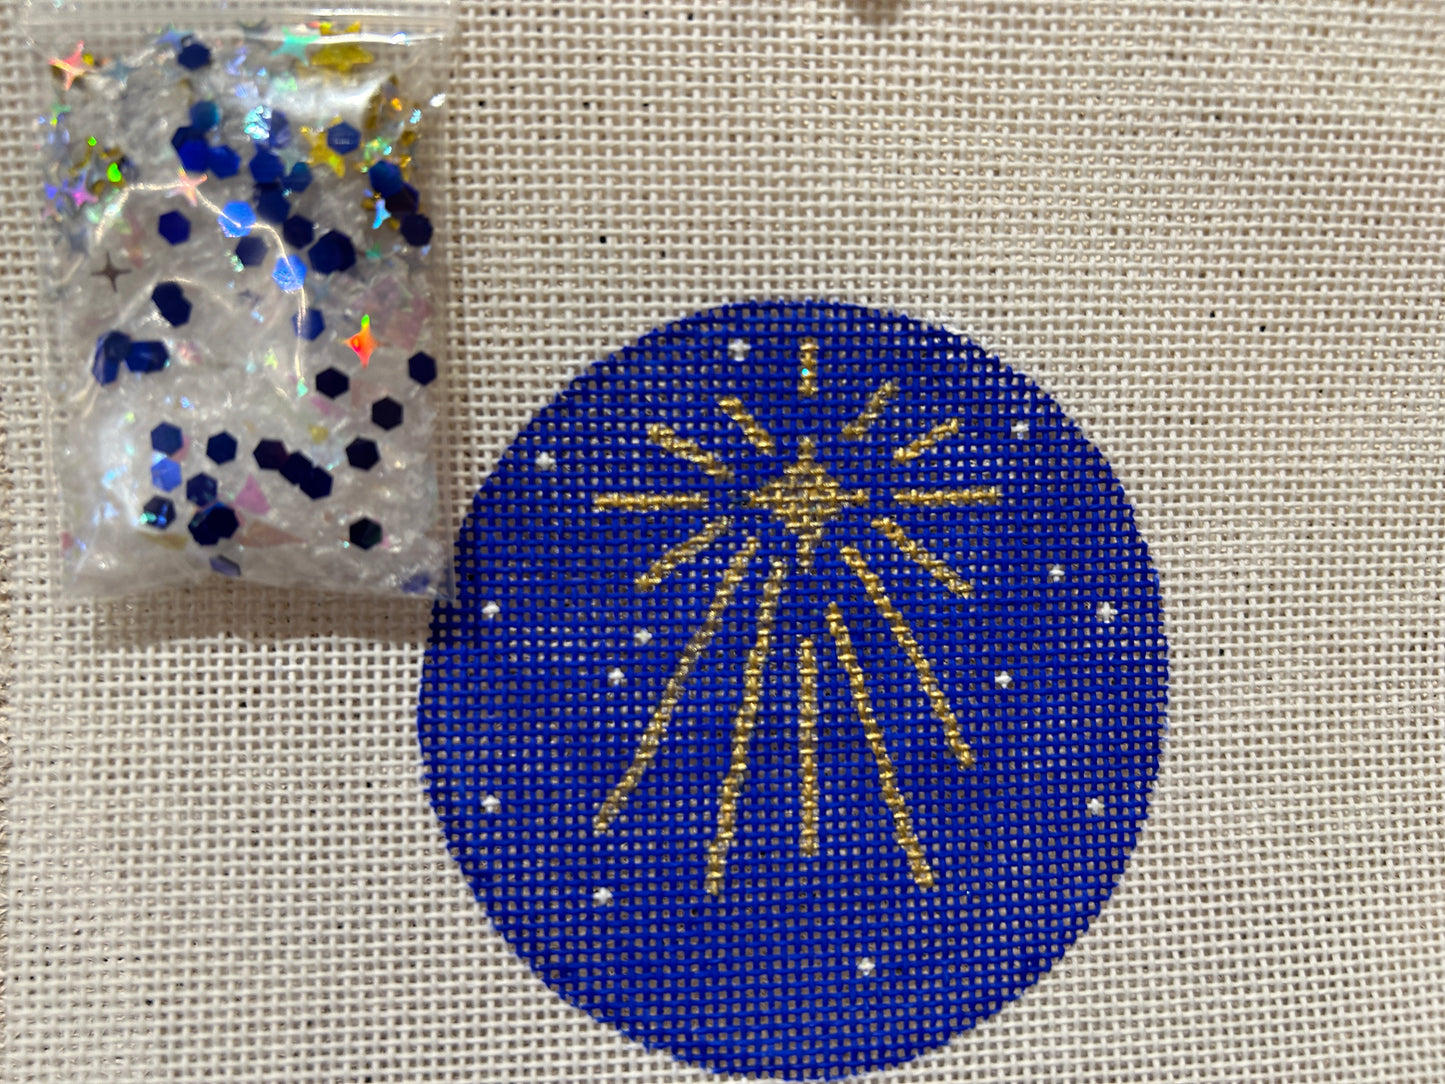 Star of Bethlehem on Night Sky w/Clear Dome & Confetti